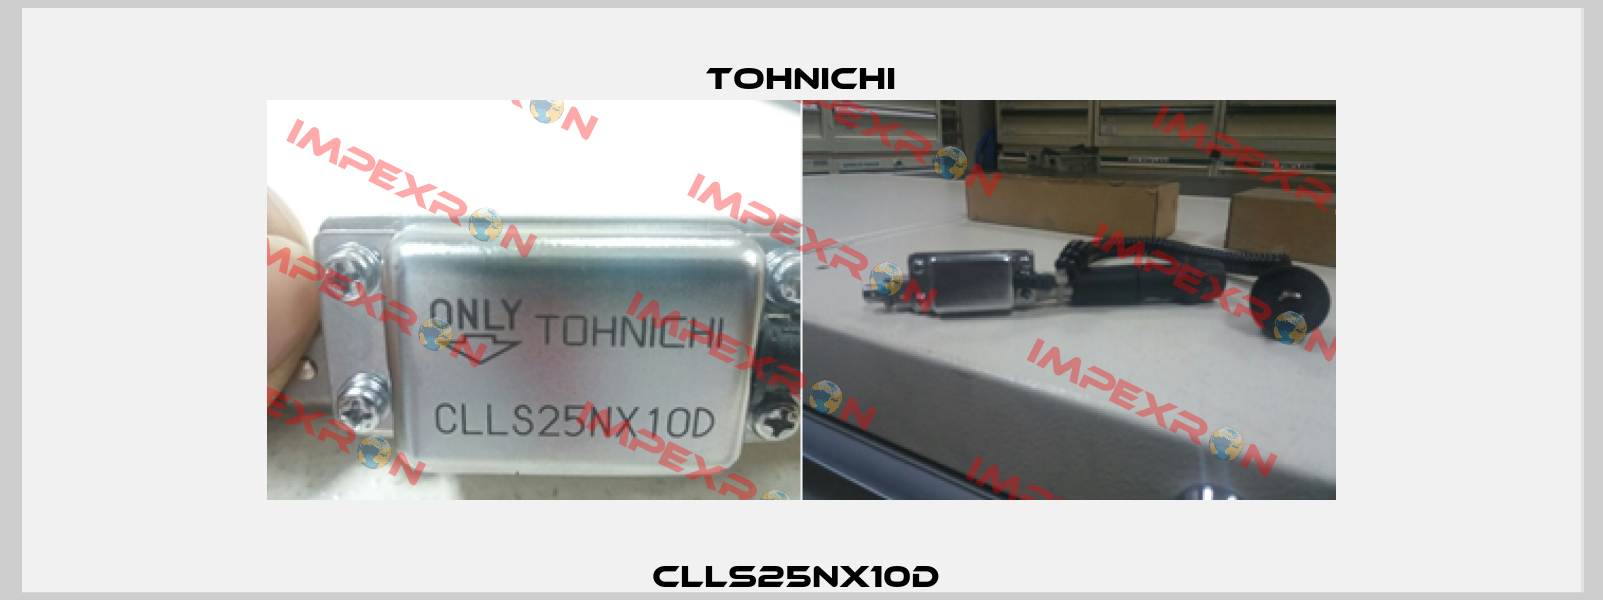 CLLS25NX10D  Tohnichi